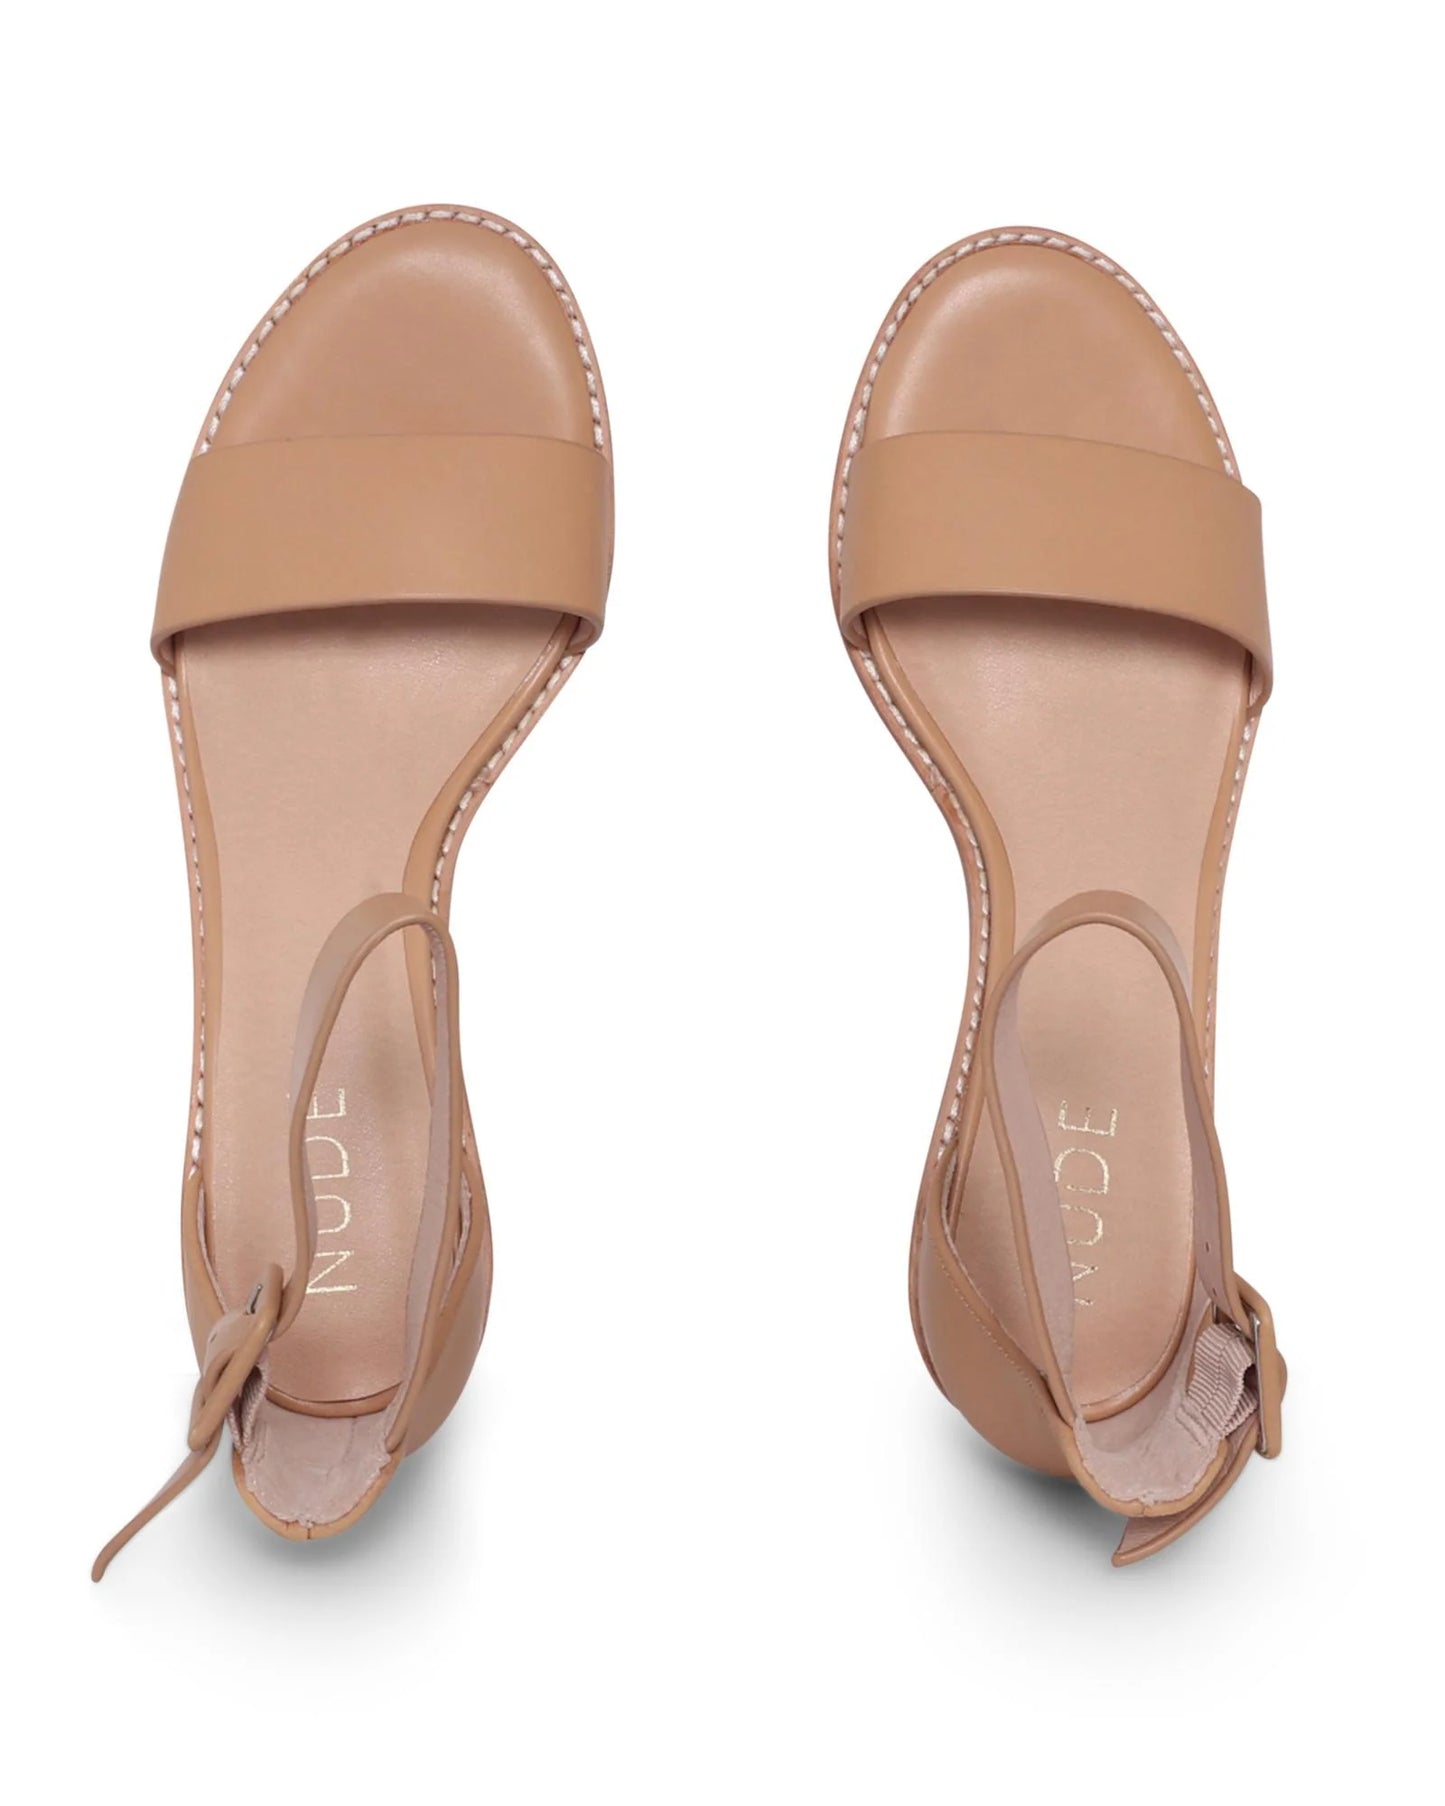 MICKEE Nude Sandal - NUDE FOOTWEAR - 36, 37, 38, 39, 40, 41, BF, Nude, sandals, womens footwear - Stomp Shoes Darwin